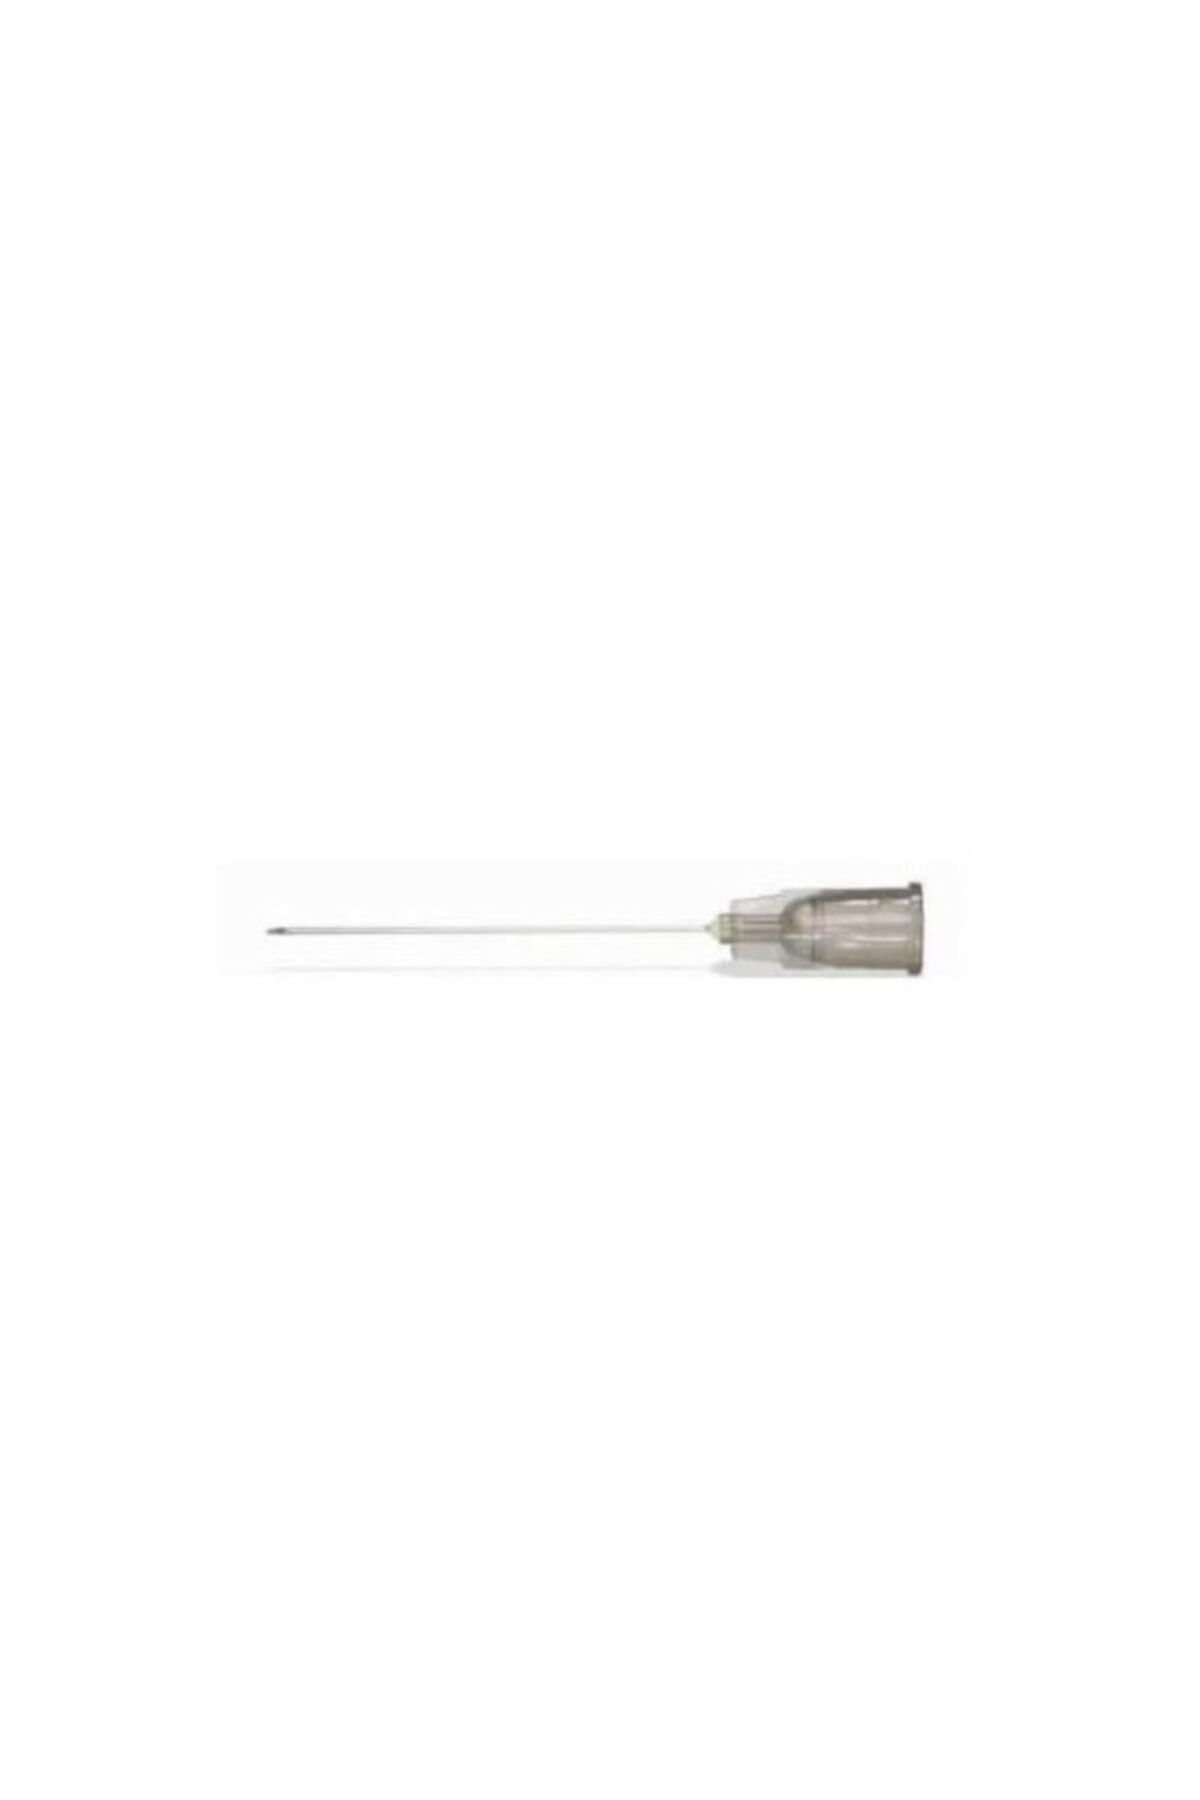 Ayset 70507 (27g-40mm) K.dental Enjektör Iğne Ucu Gri 500 Adet